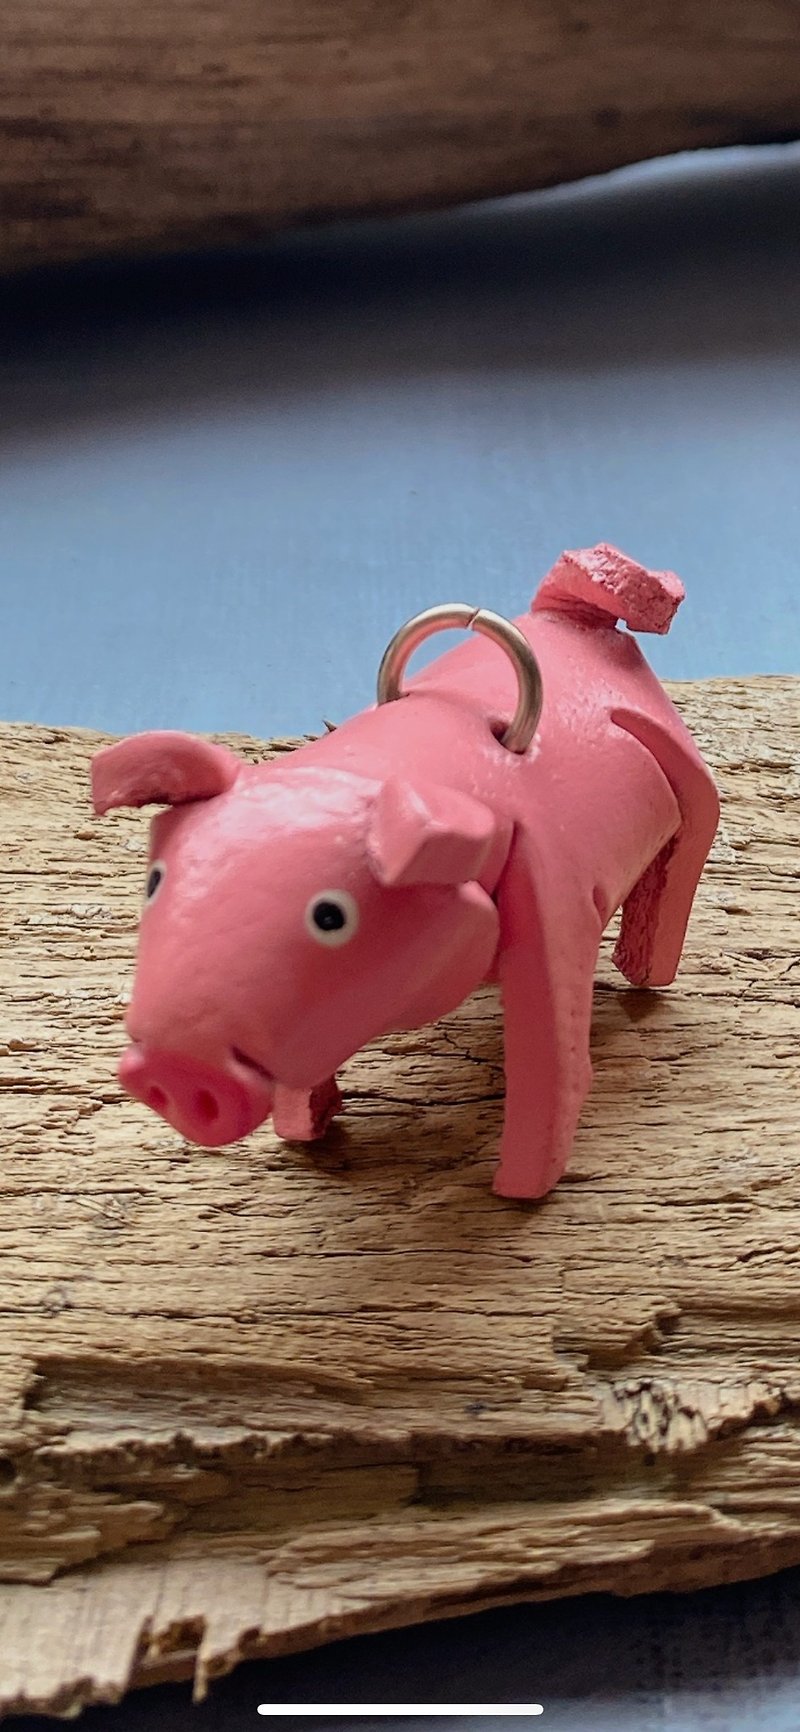 Leather carving products---pink pig - ที่ห้อยกุญแจ - หนังแท้ หลากหลายสี